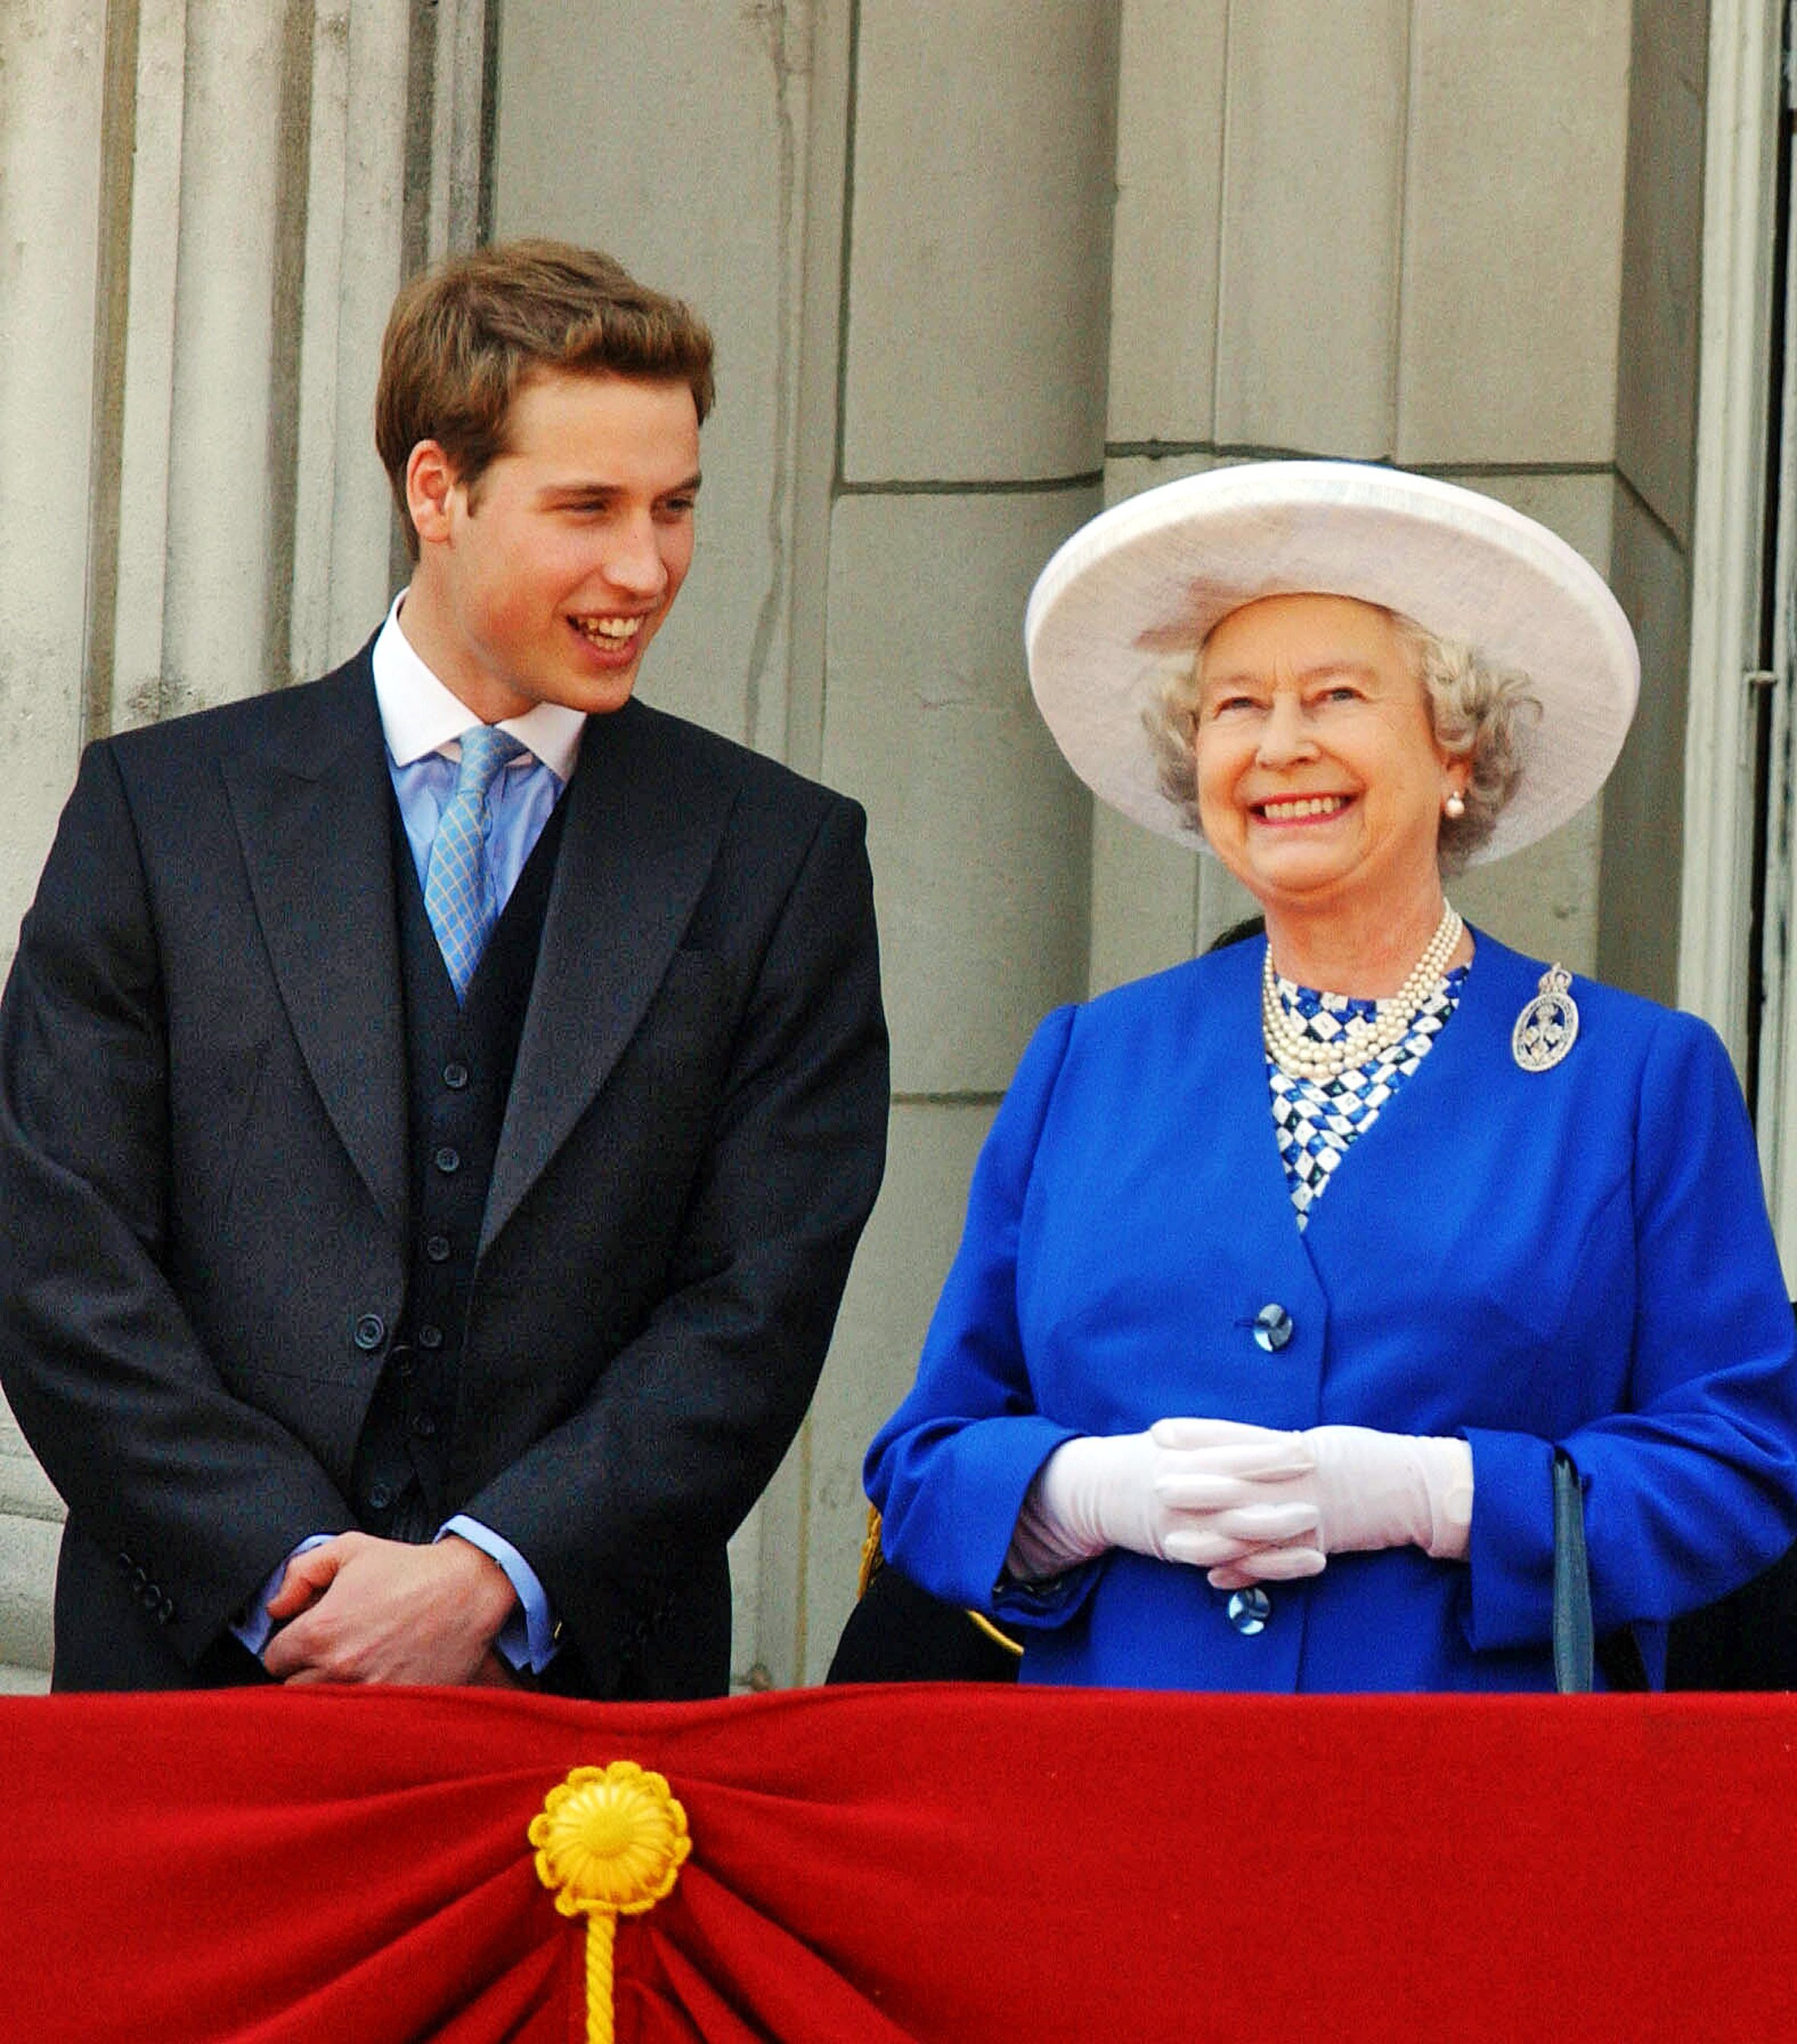 La reine Elizabeth ll photographiée avec son petit-fils, le prince William, regardant le Trooping of the Color sur le balcon du palais de Buckingham, le 14 juin 2003, Londres, Angleterre ┃Source : Getty Images